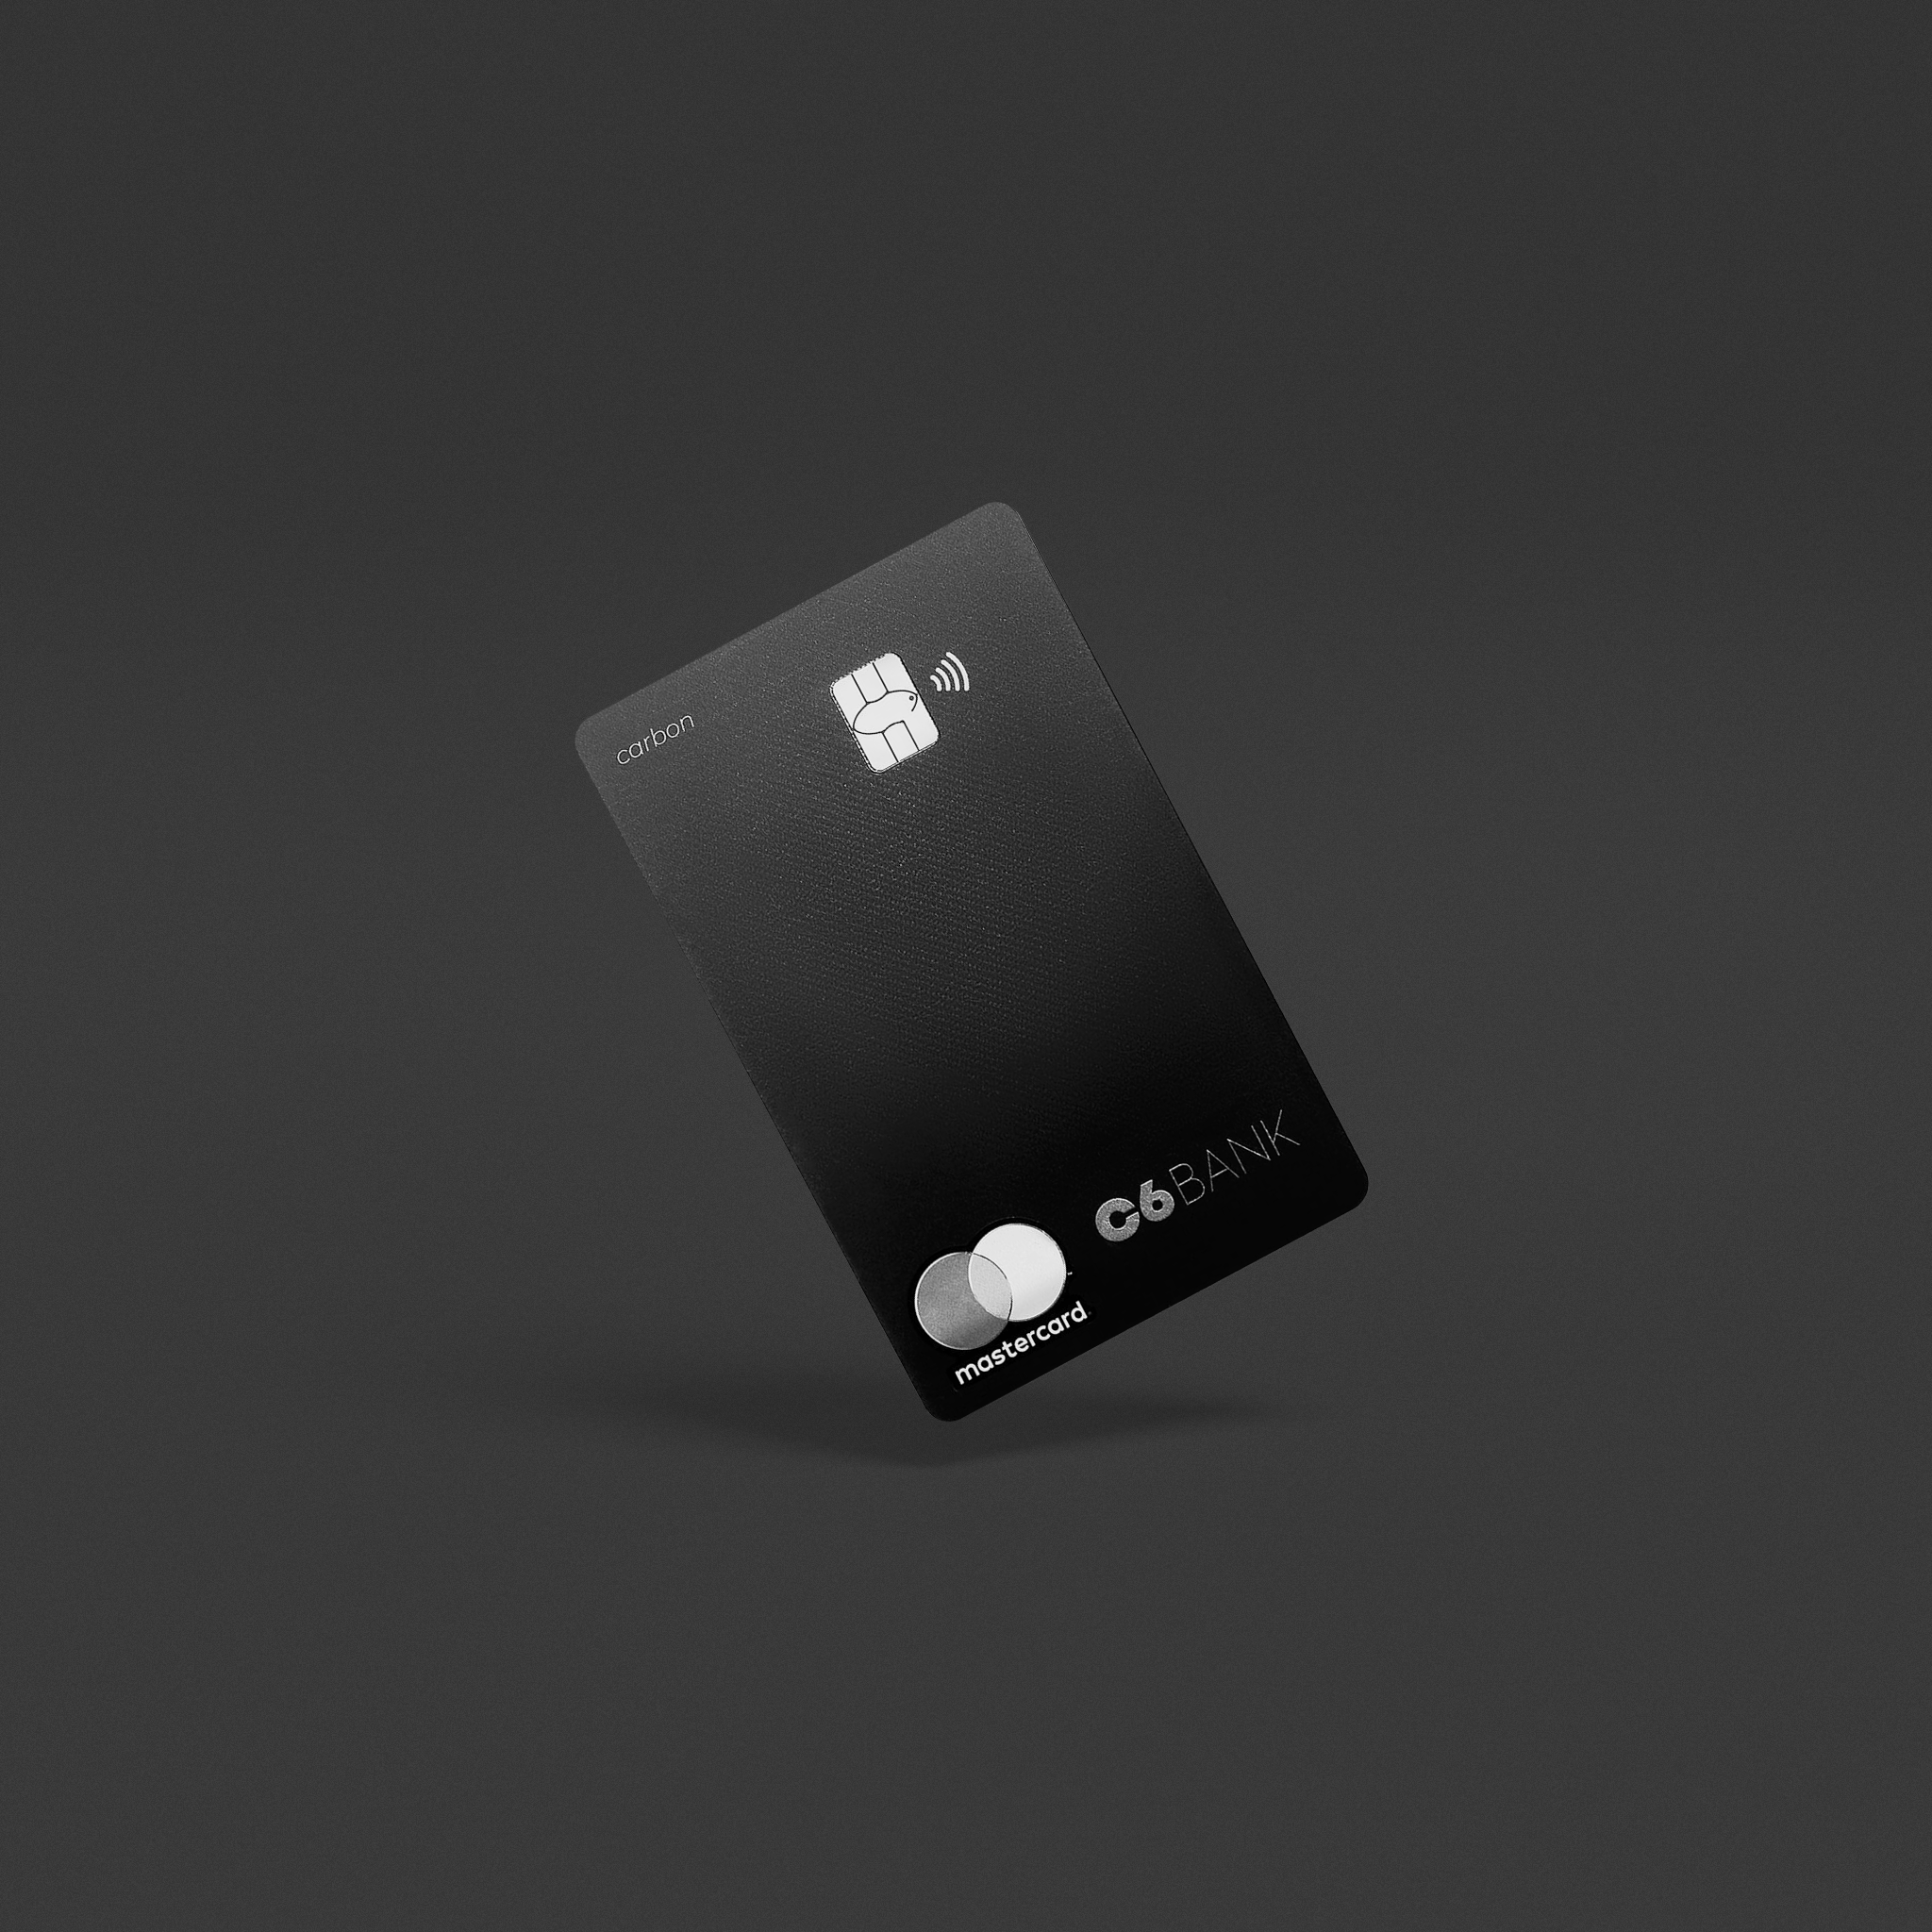 Foto de um cartão C6 Carbon de frente, na vertical, um pouco inclinado, num fundo preto.